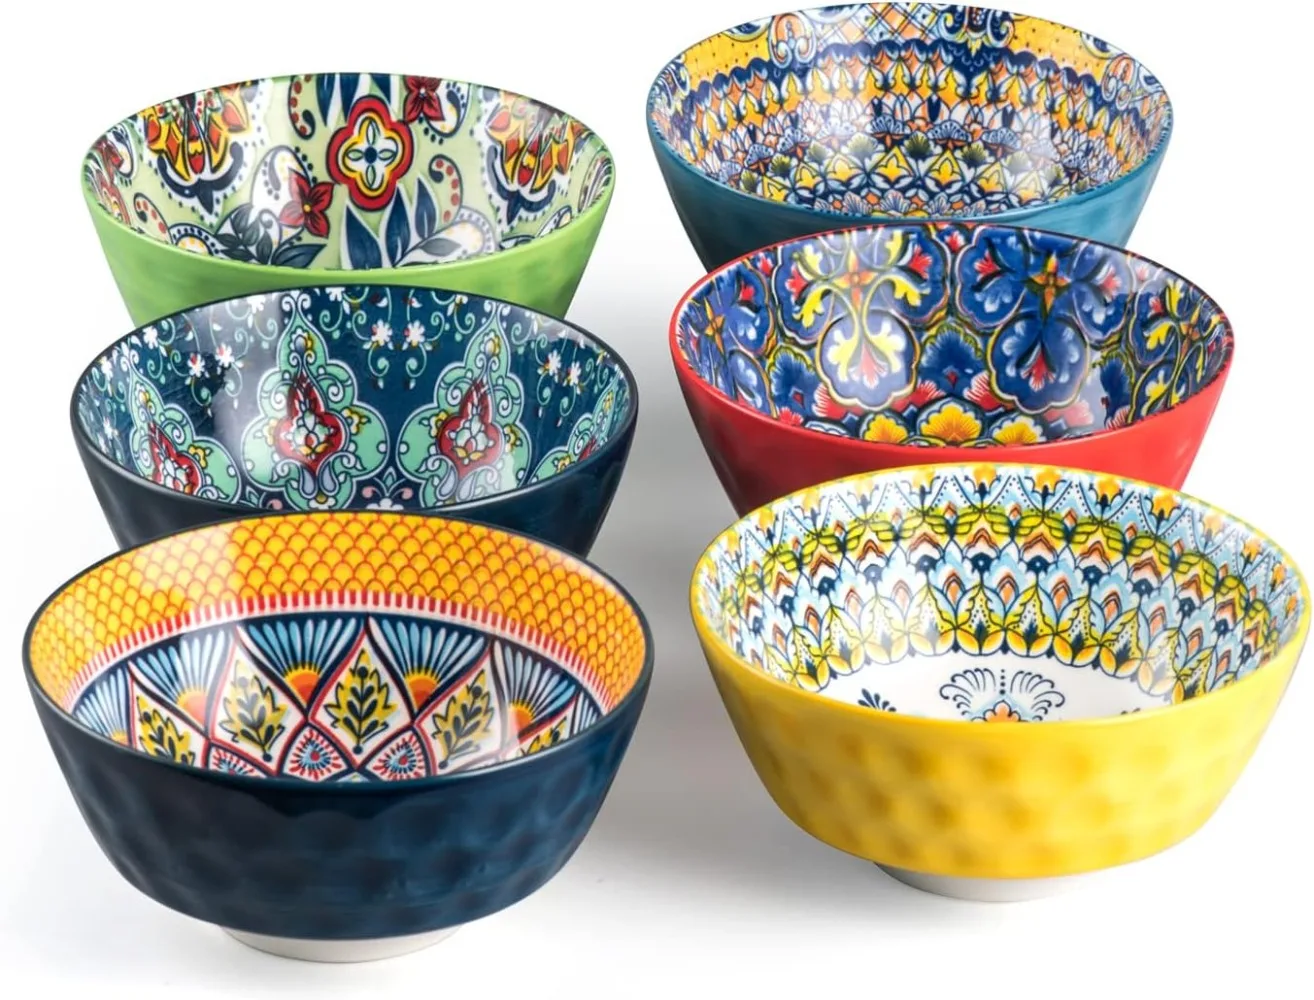 

HENXFEN LEAD Ceramic Cereal, Soup Bowls Set of 6-25 Oz Deep Colorful Porcelain Serving Bowls for Dinner, Pasta, Salad